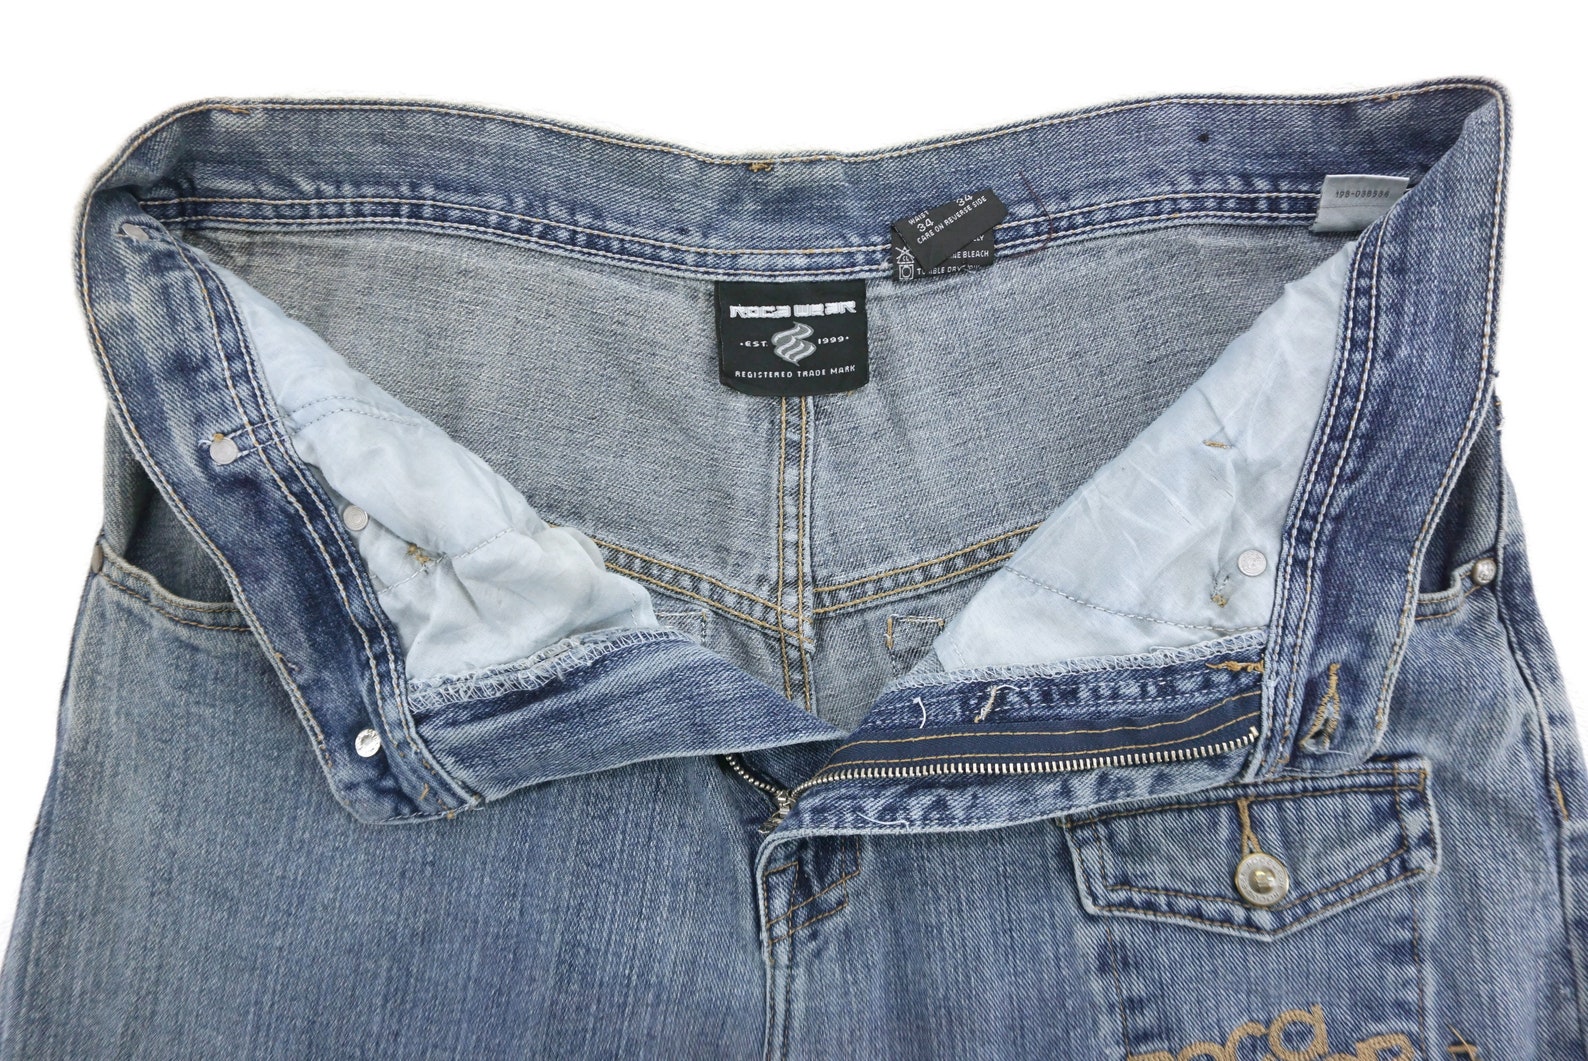 ROCAWEAR Jeans Size 34 W35xL33.25 Vintage Rocawear Denim Jeans | Etsy